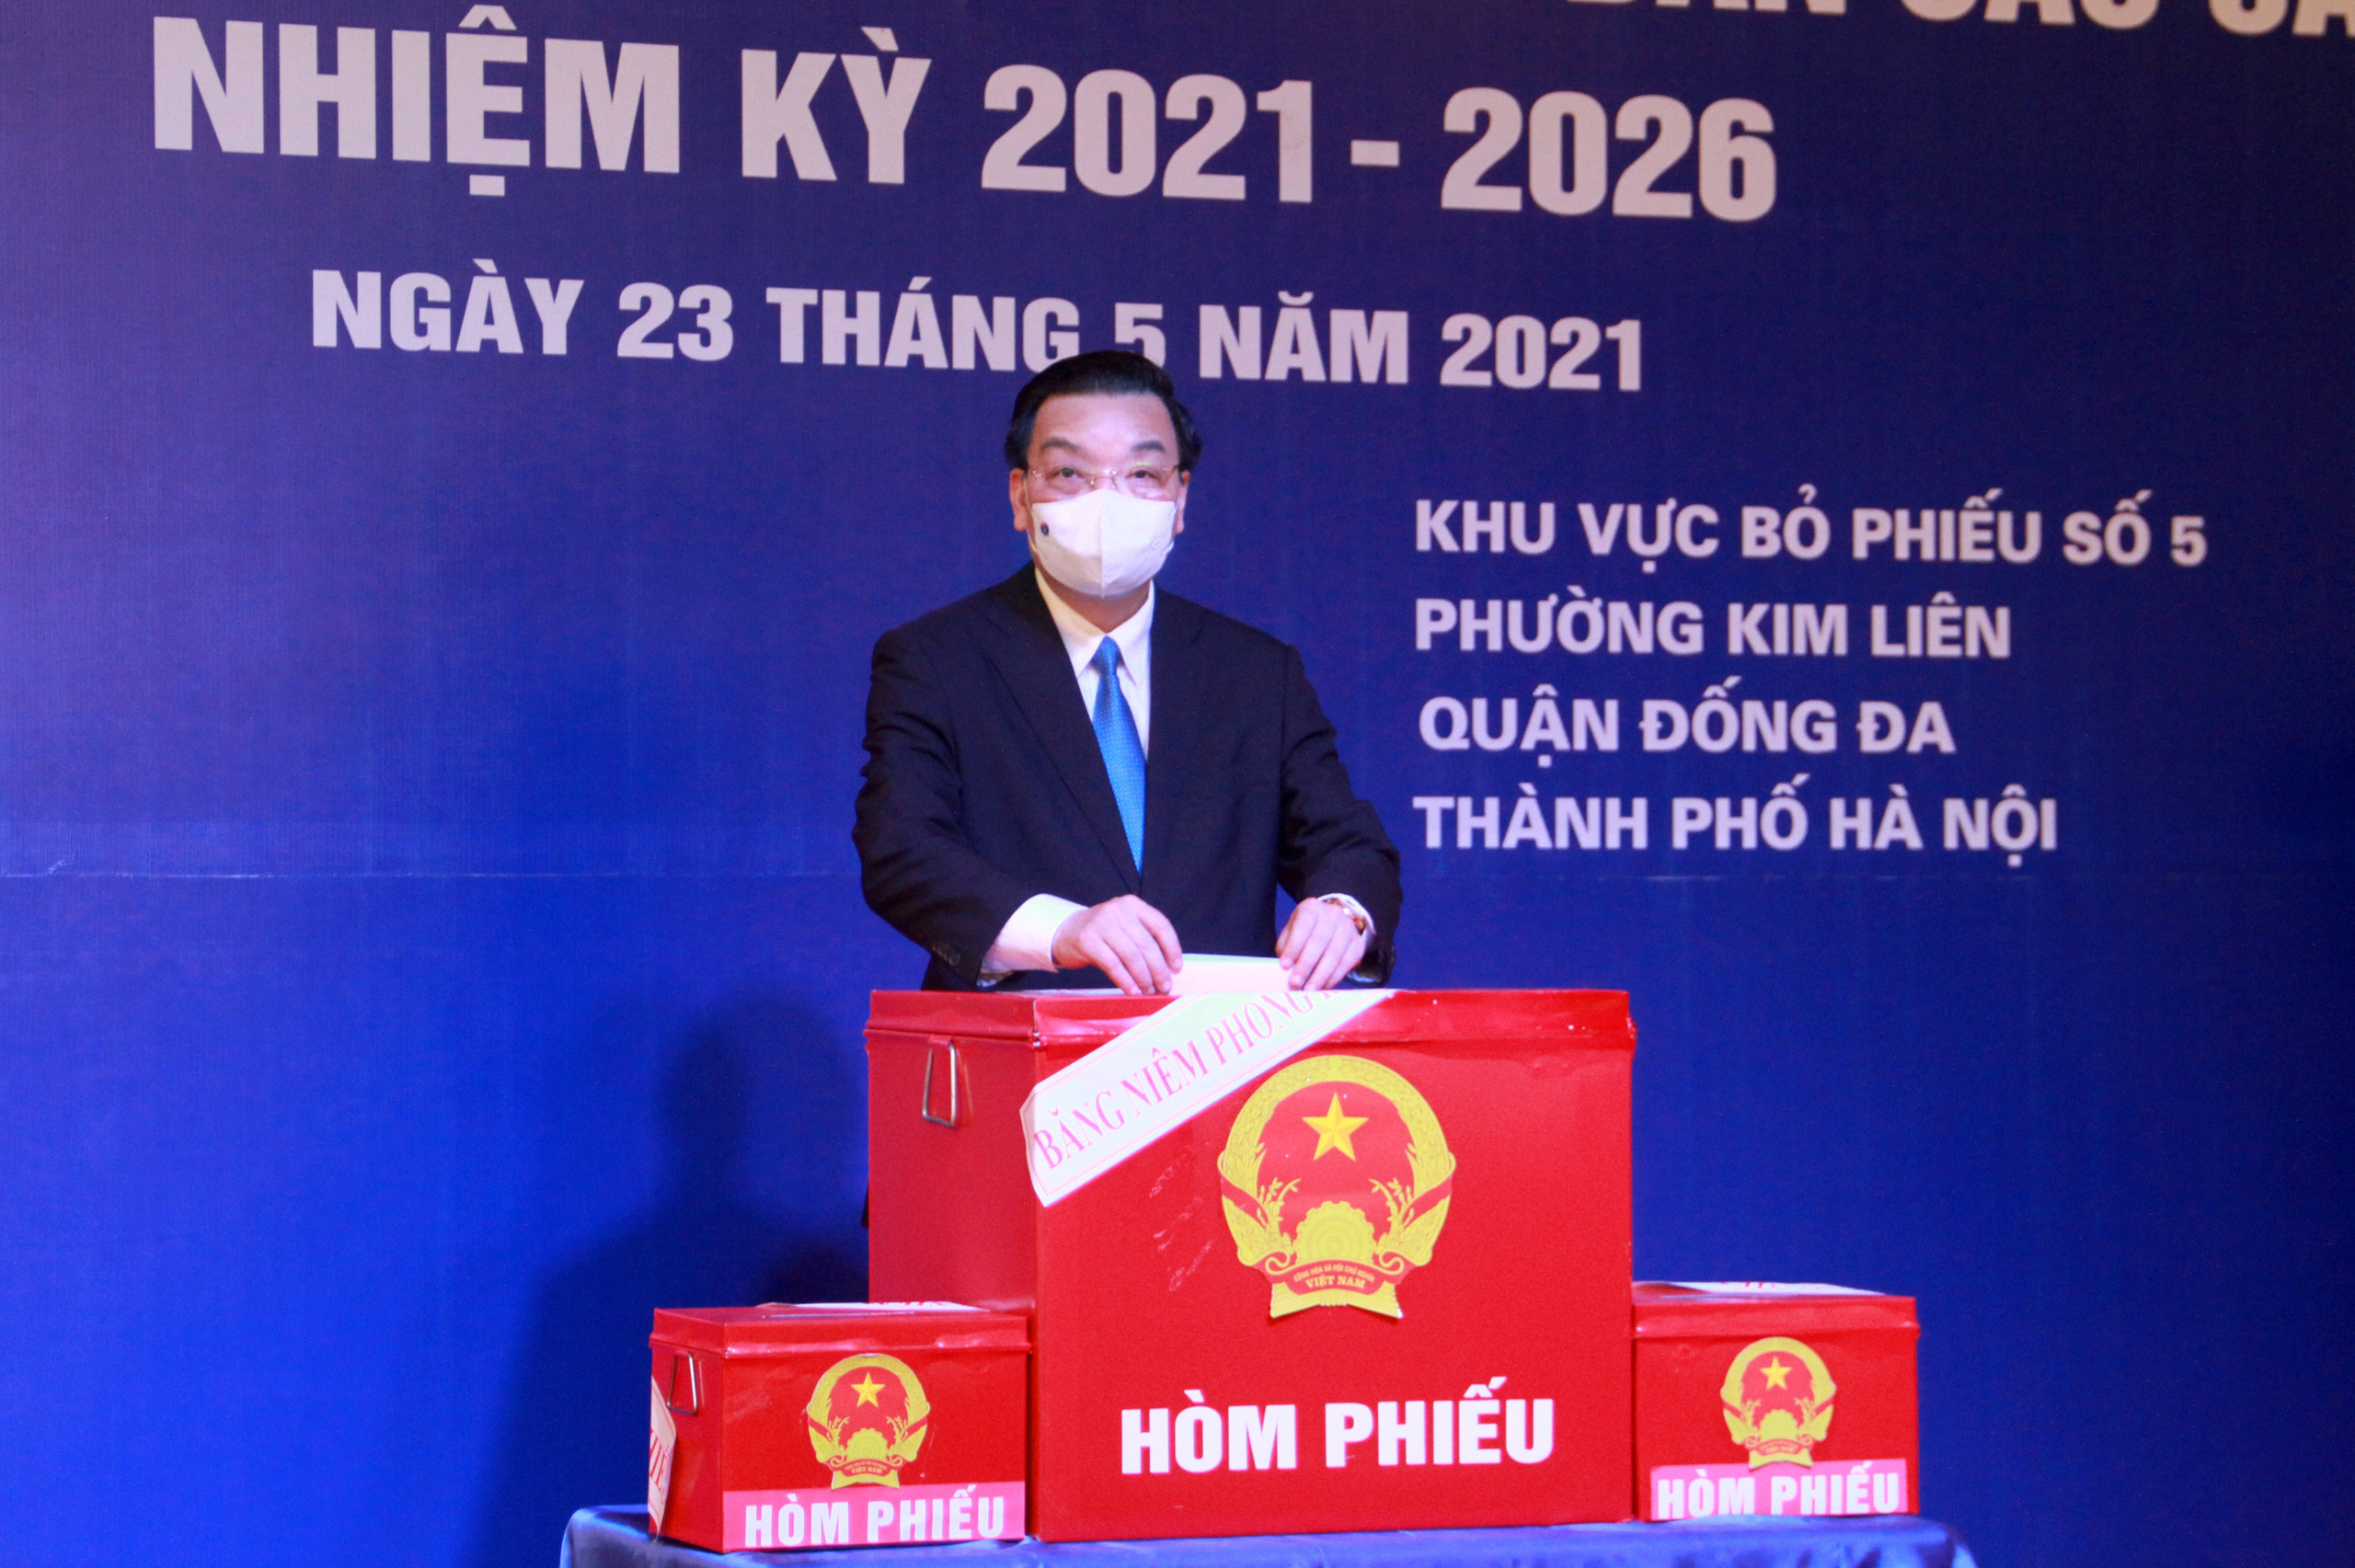 Ảnh: Bí thư, Chủ tịch Hà Nội thực hiện &quot;quyền và nghĩa vụ&quot; của cử tri - Ảnh 4.